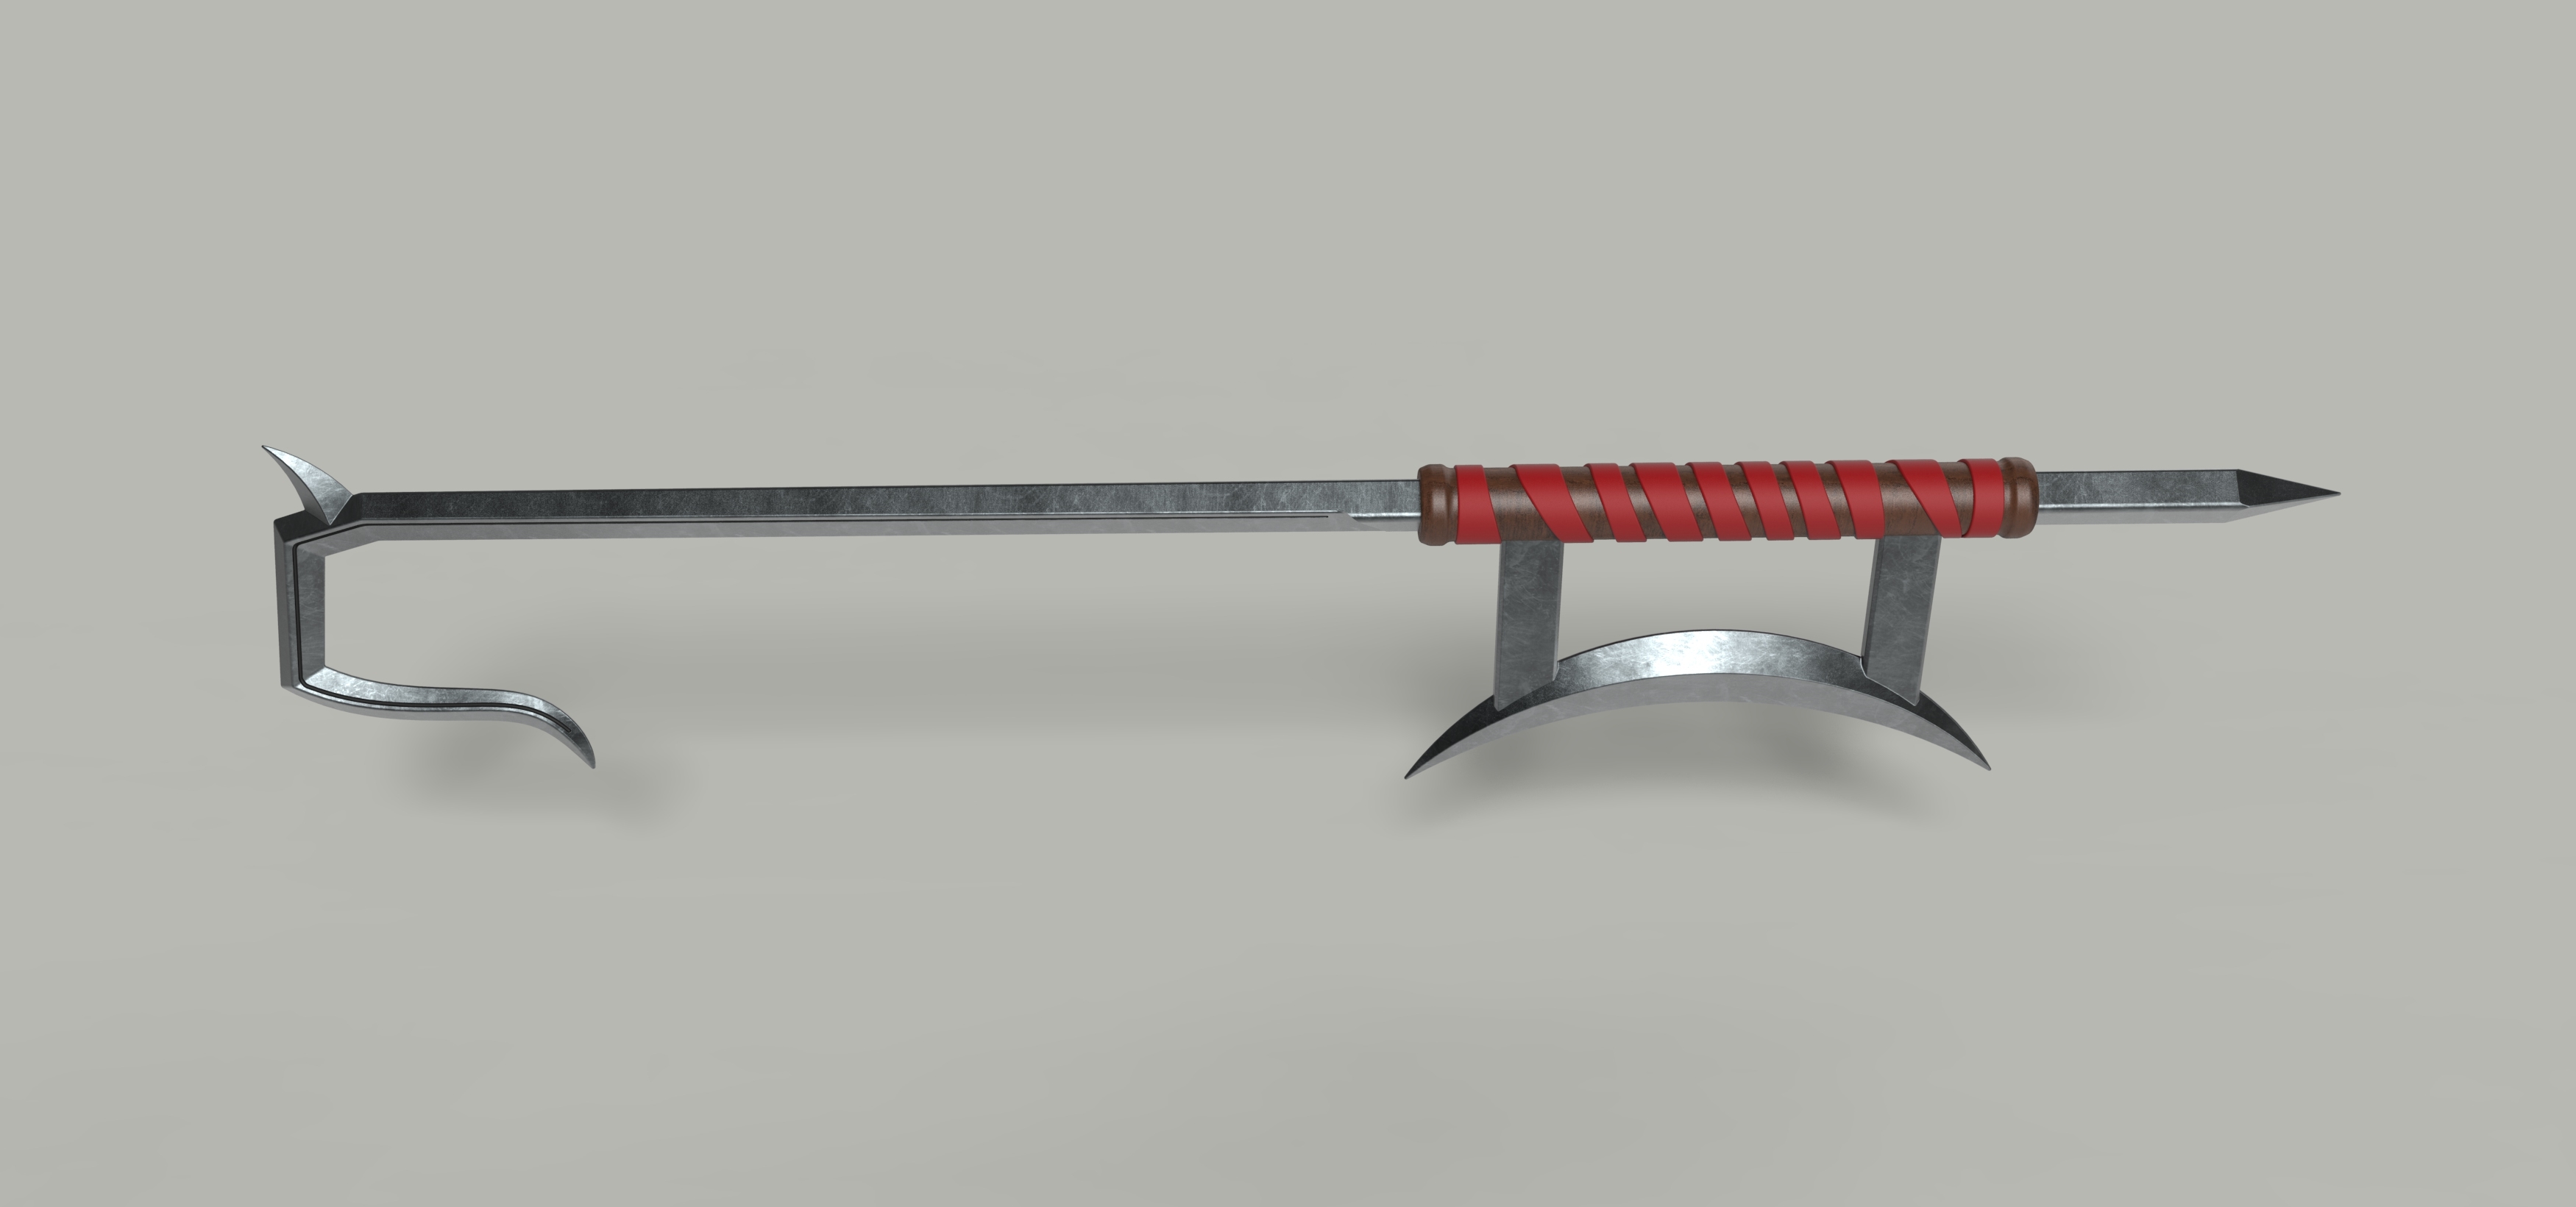 3D sword hook kabal model - TurboSquid 1377838